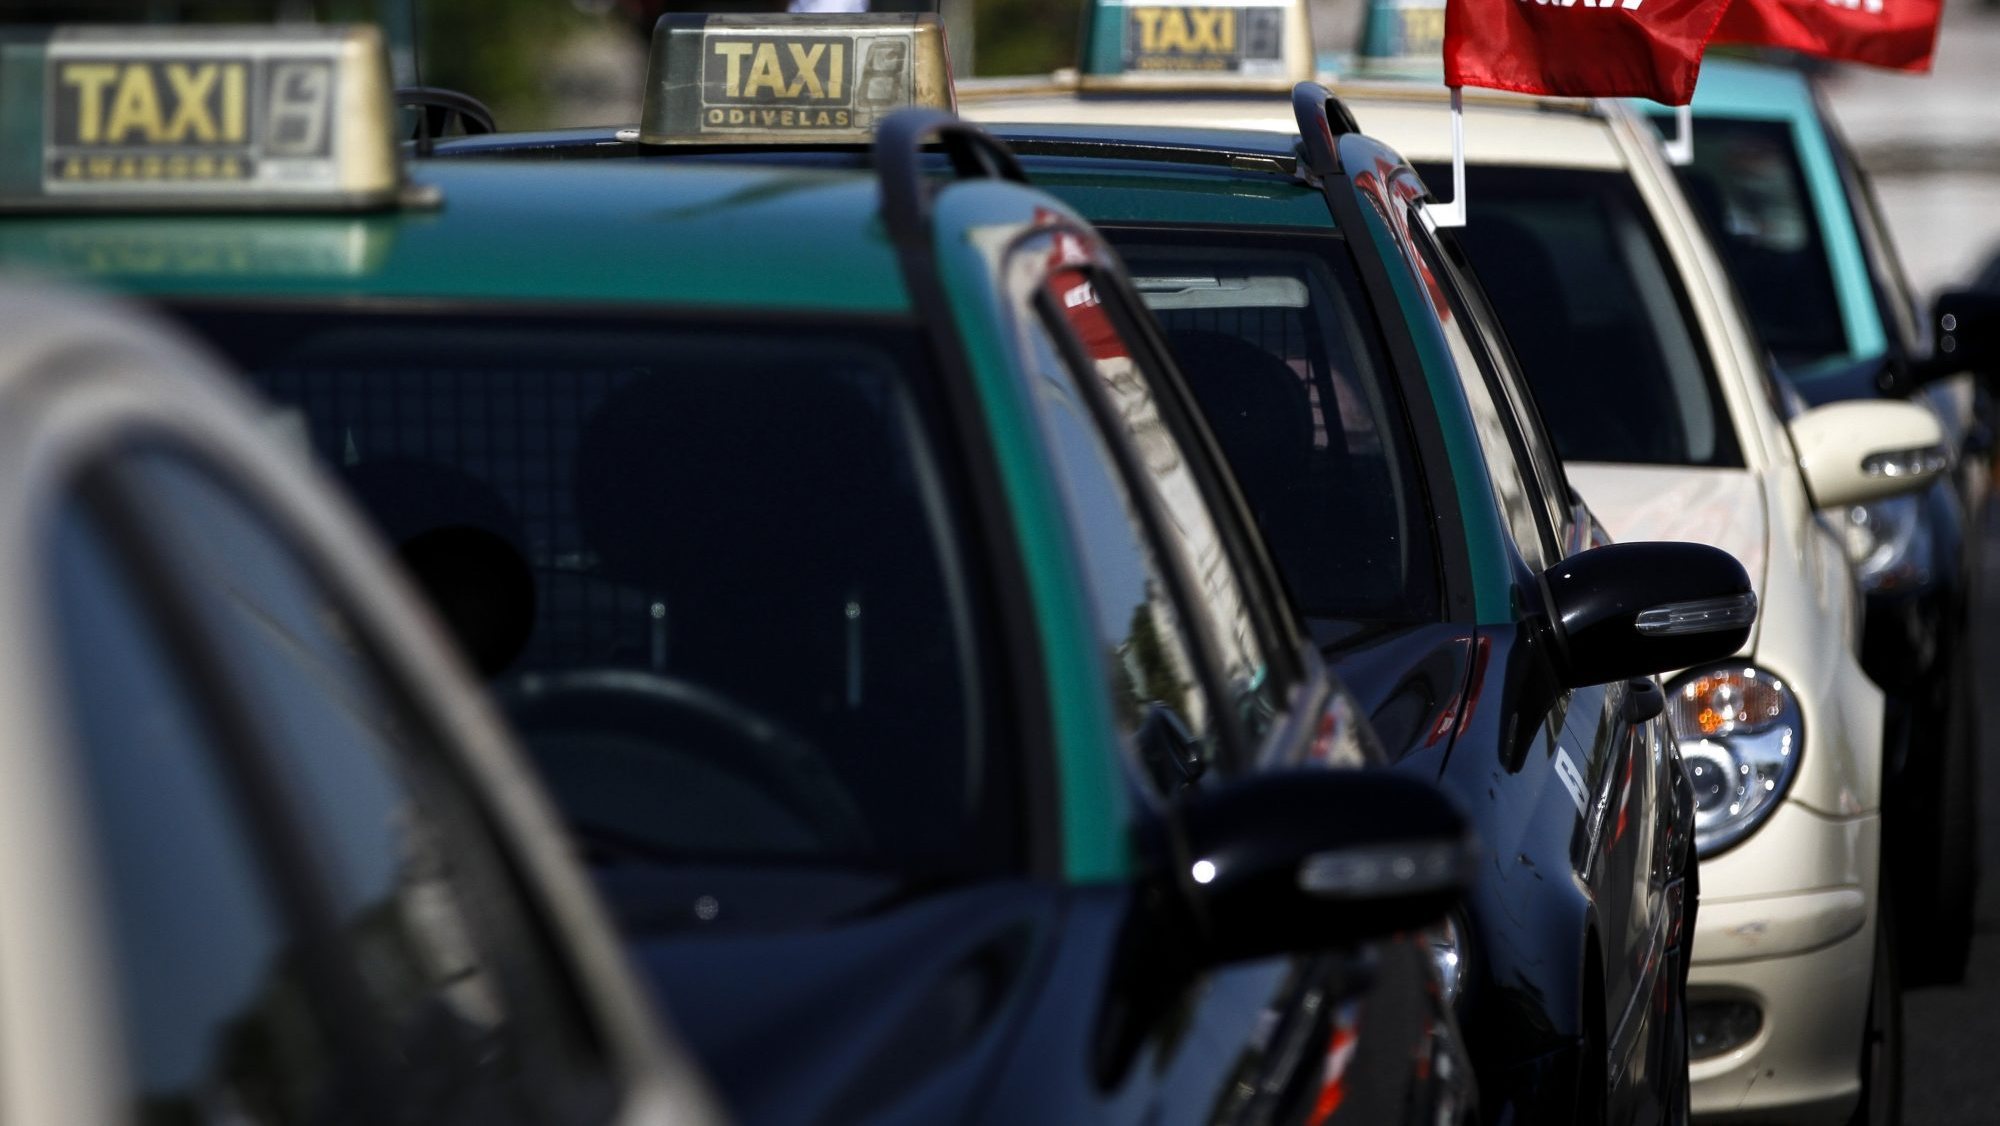 Período de adaptação à proibição de circulação de táxis com mais de 10 anos prorrogado até 2025, revela Governo